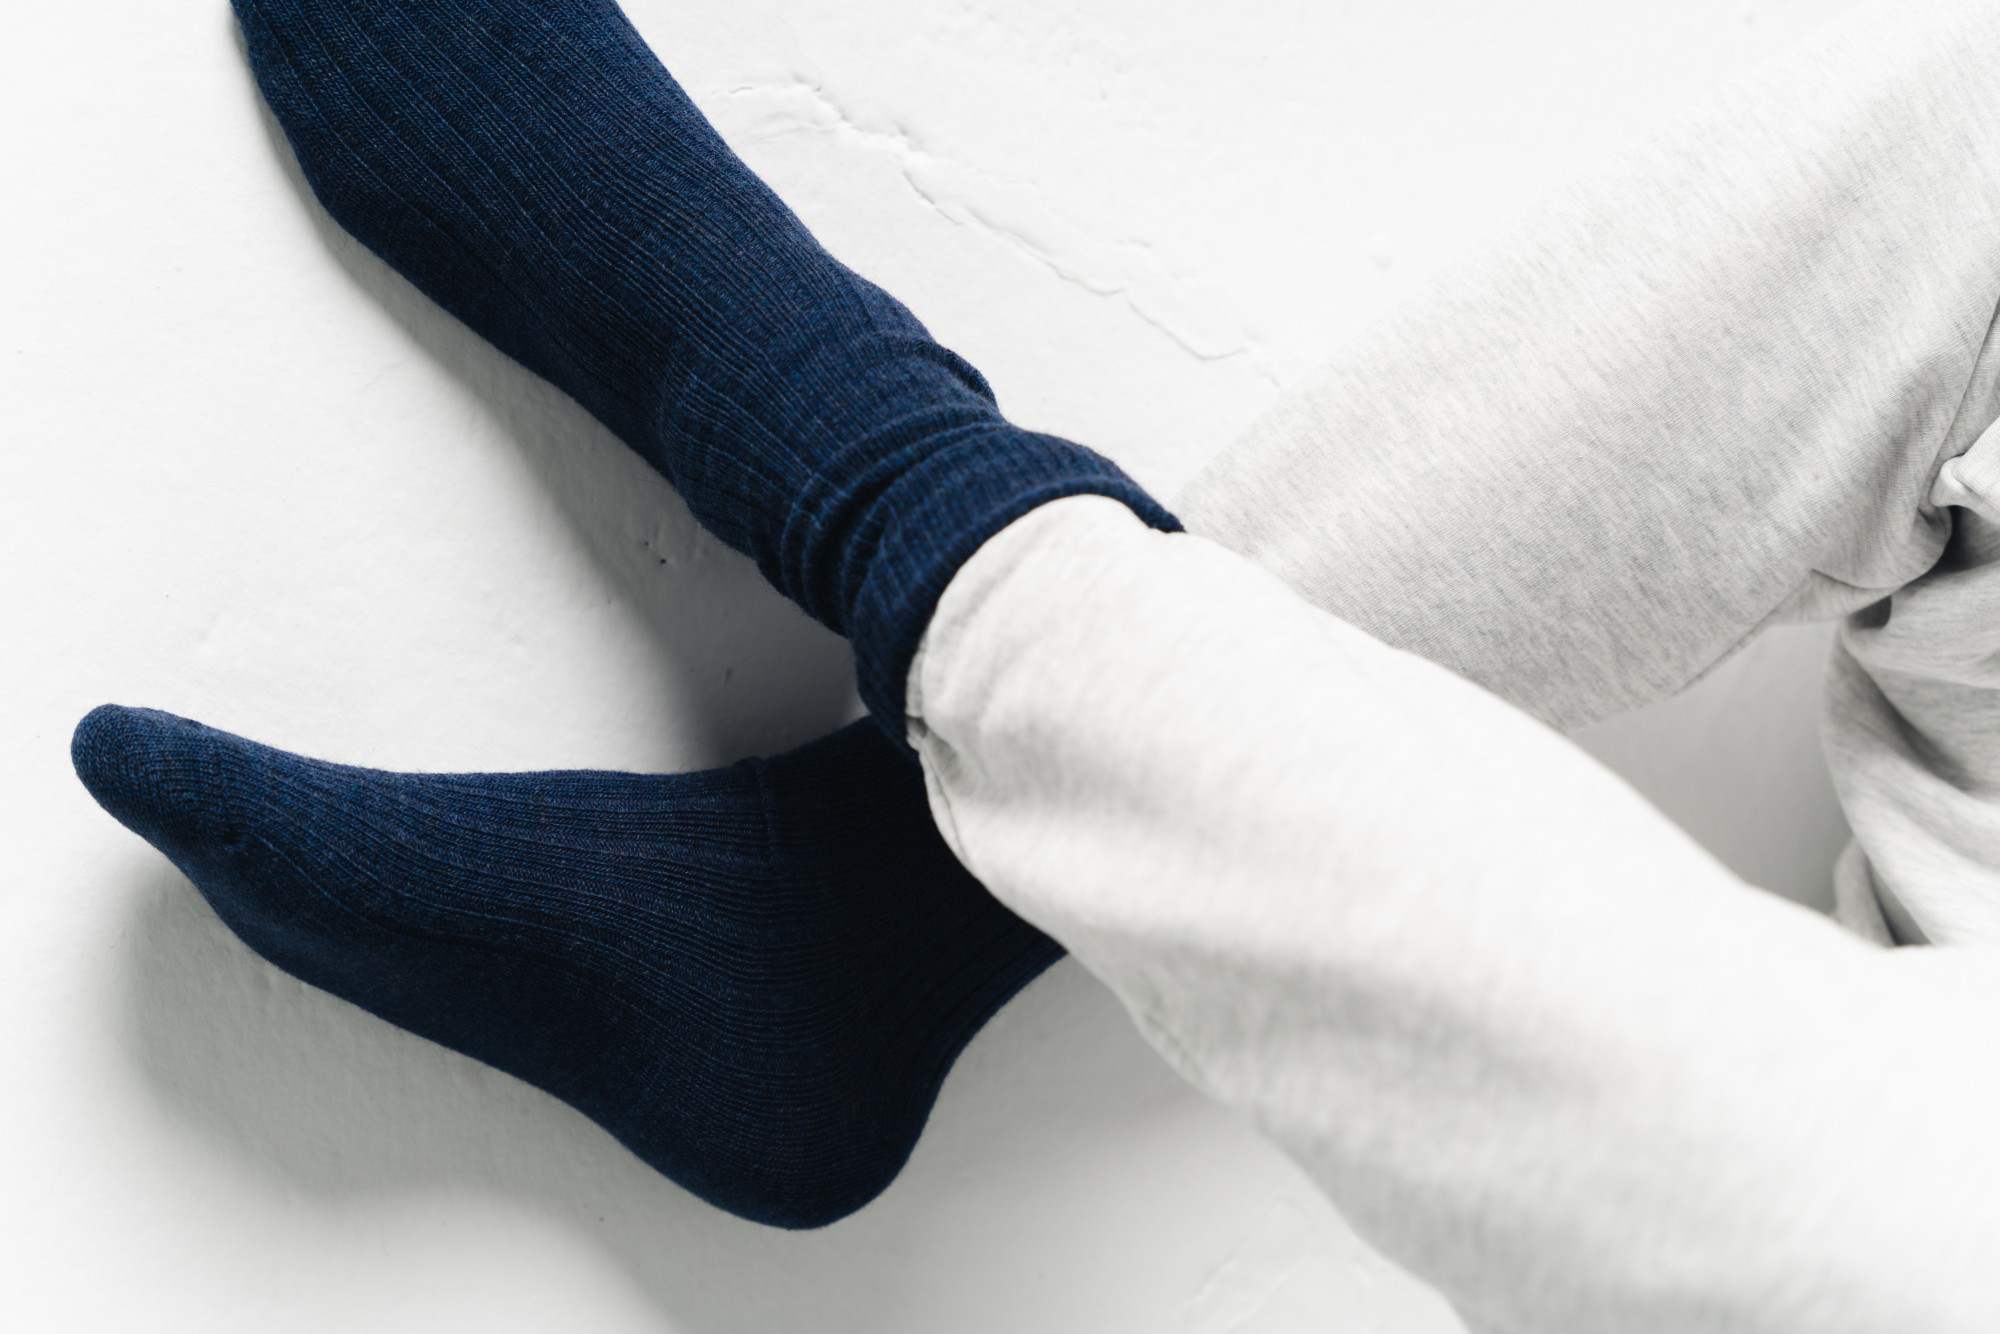 Ponožky 044-005 Alpaca navy blue - Steven 41/43